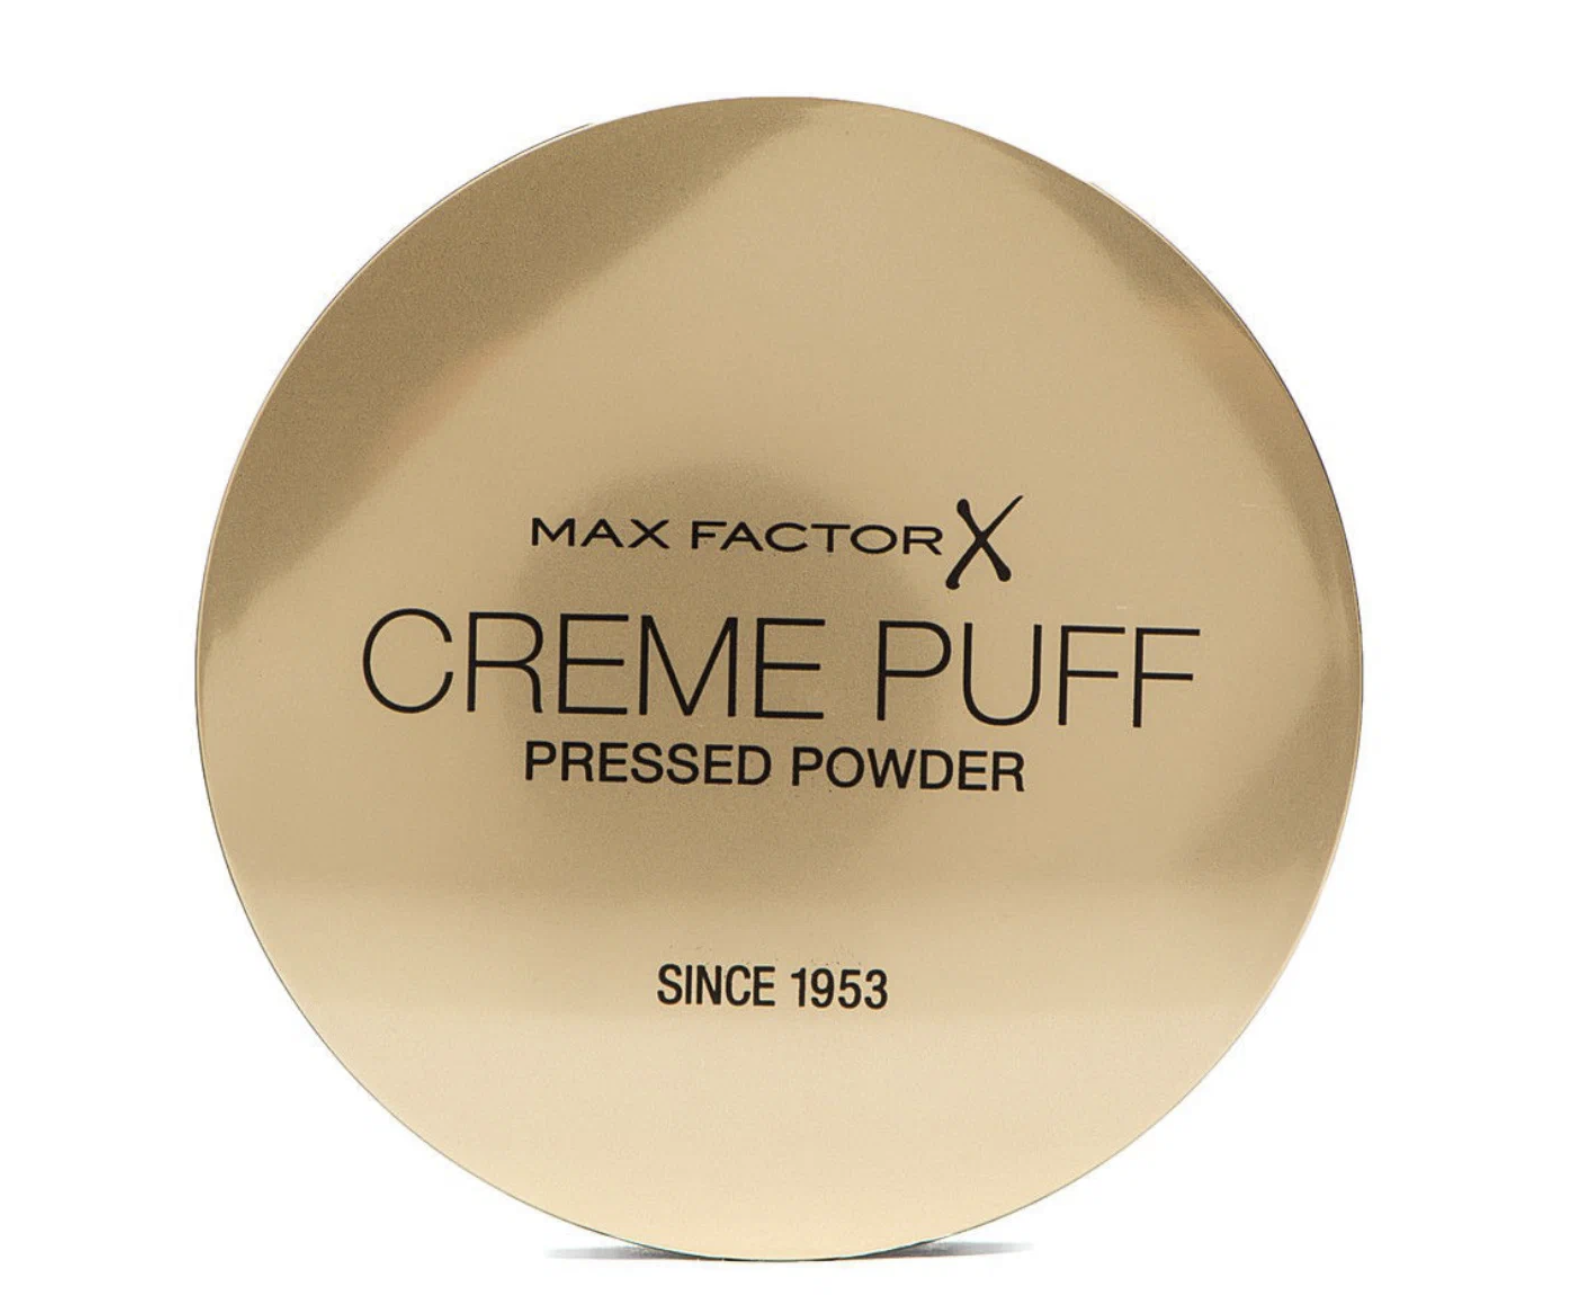 Крем-пудра для лица Max Factor Creme Puff Pressed Powder 40 Creamy Ivory 1 крем пудра для лица top cover creamy powder 2331r27 001n n 1 n 1 1 шт